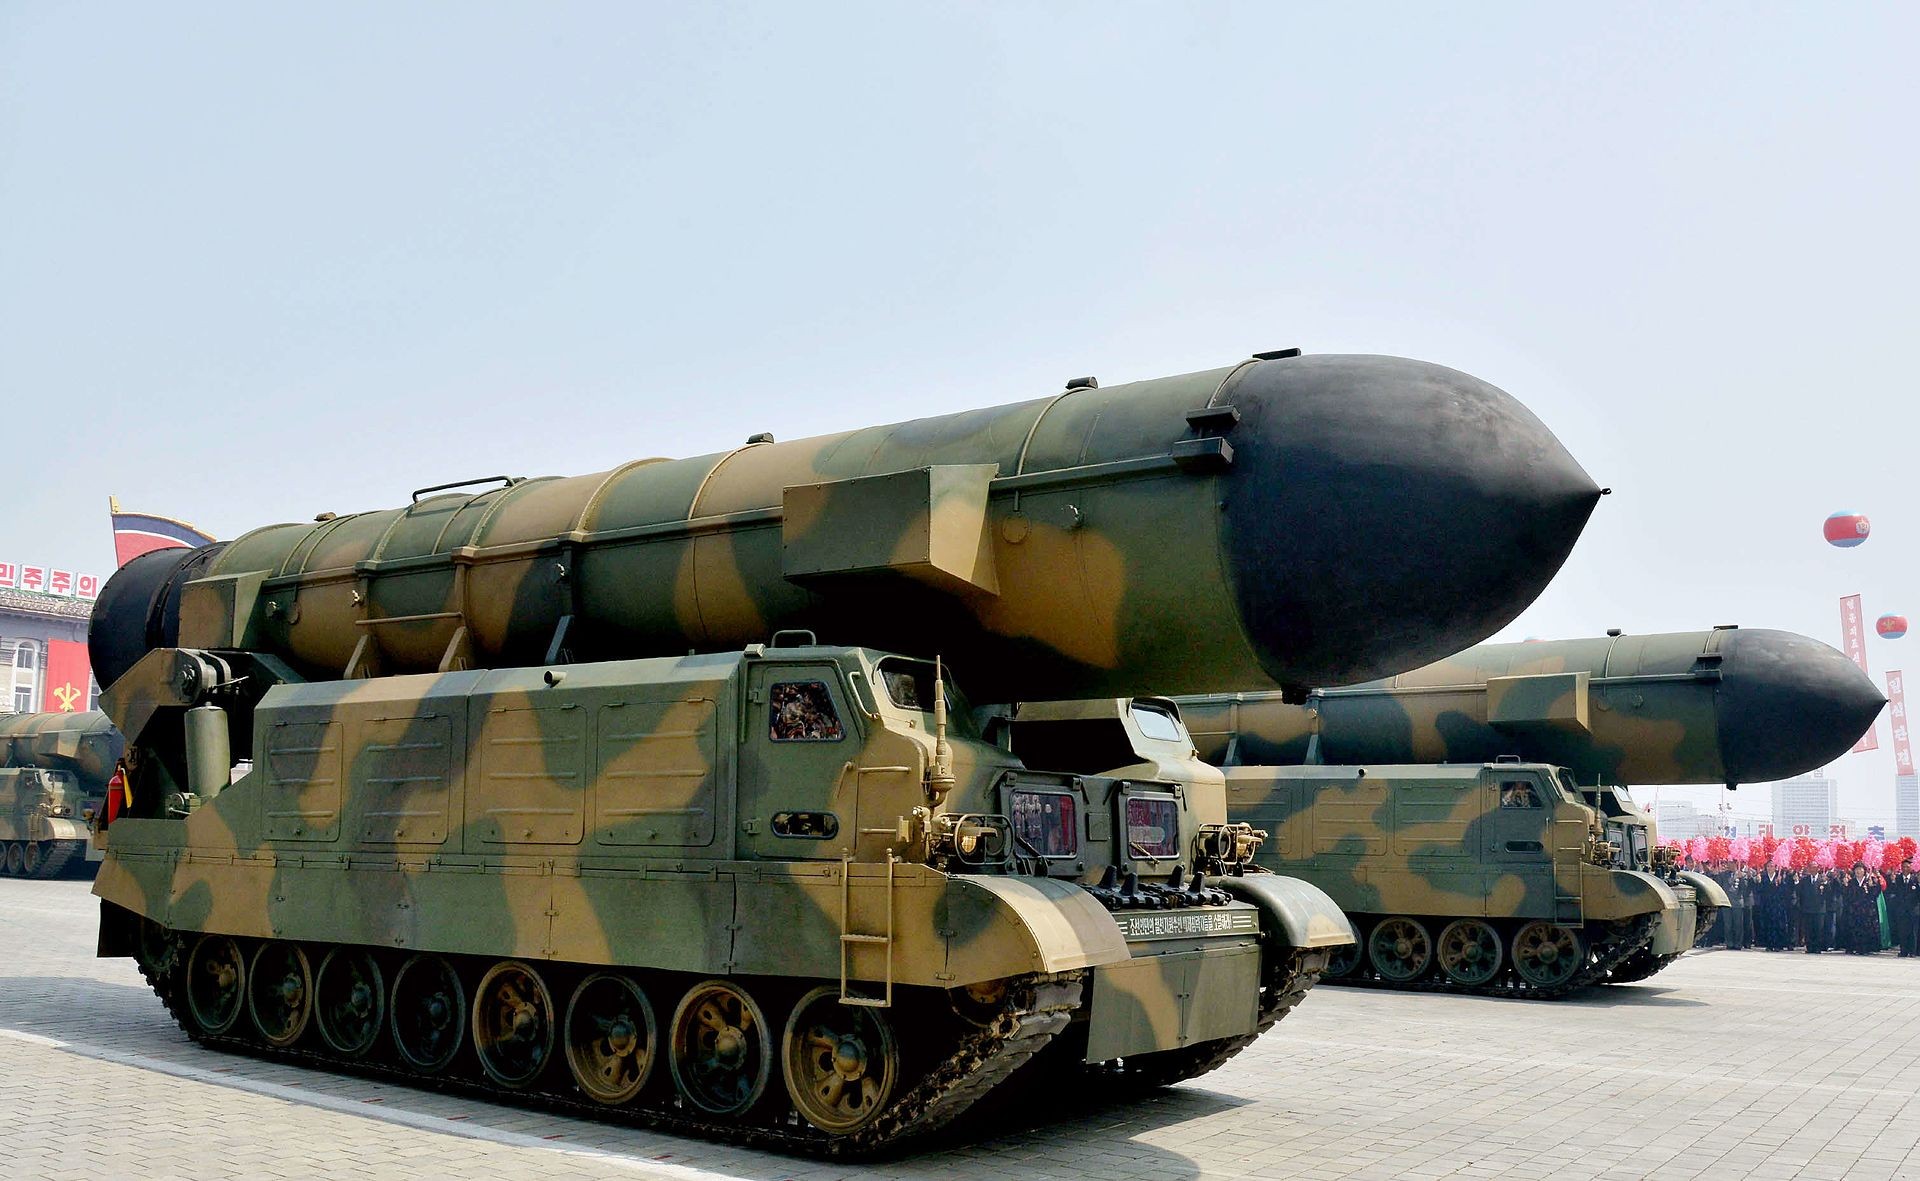 Północnokoreańska rakieta balistyczne pośredniego zasięgu Pukguksong-2, fot. LionFlyer/Wikipedia, CC BY-SA 4.0